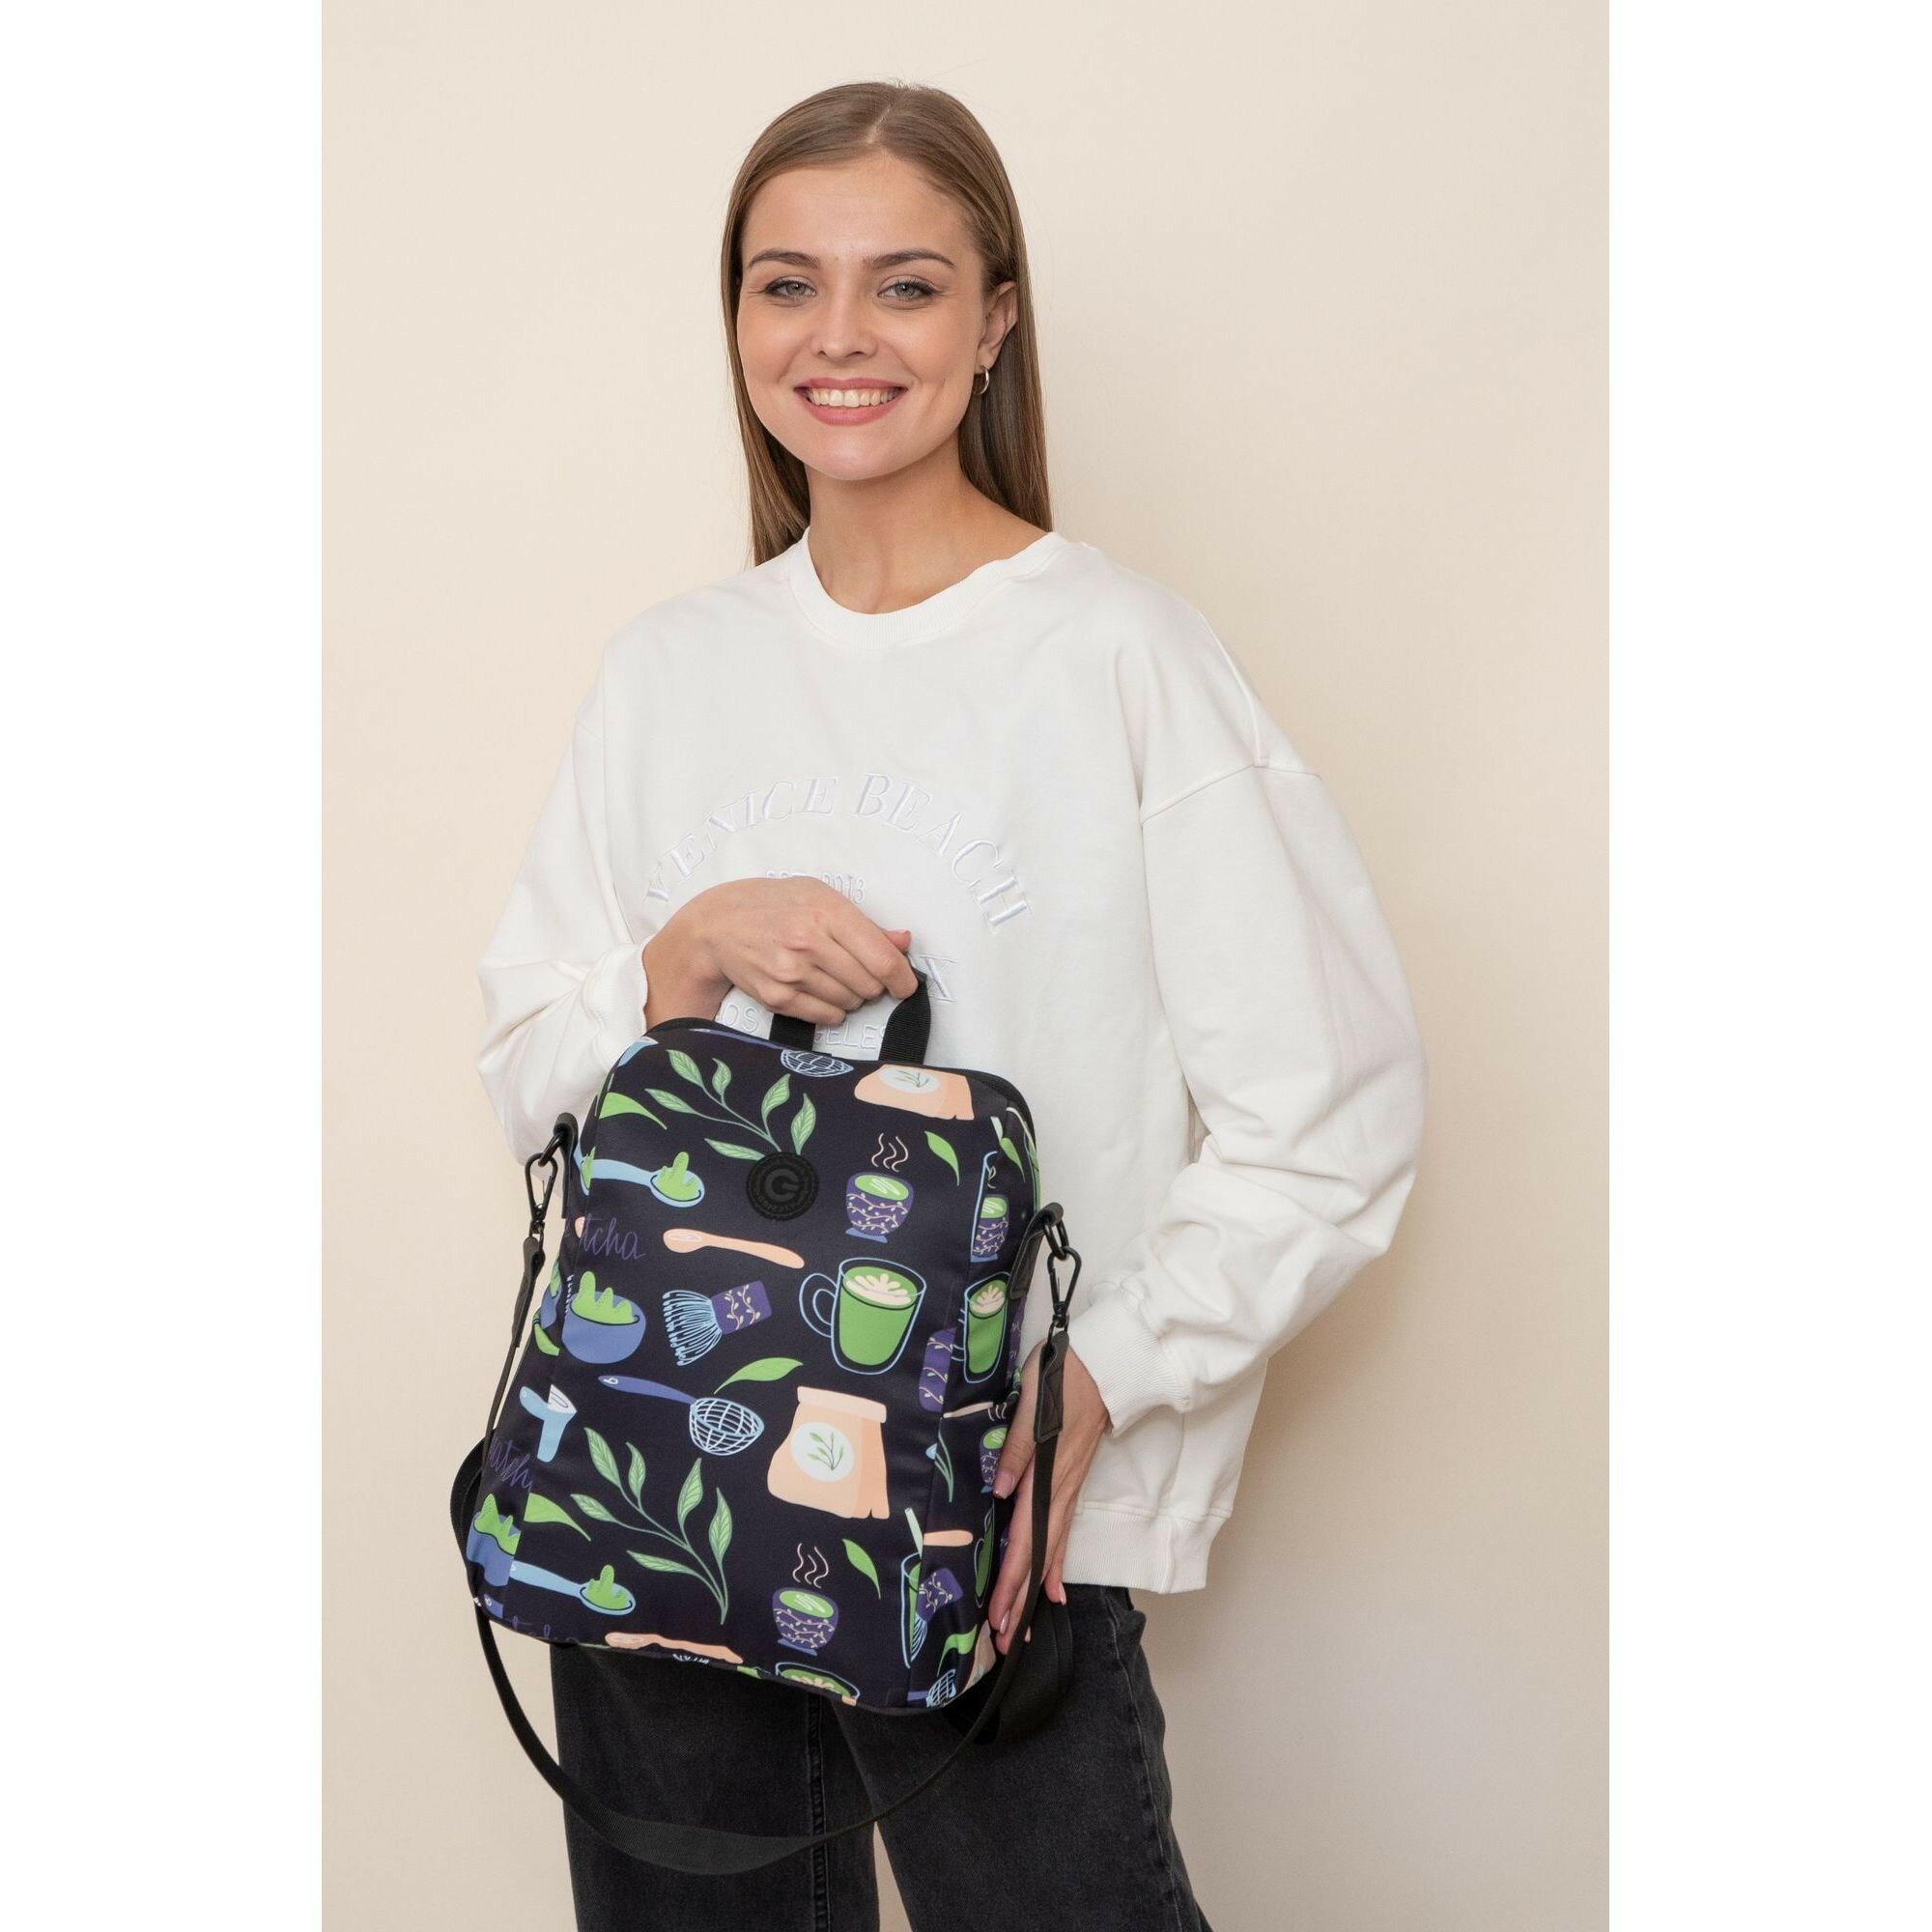 Стильный городской женский рюкзак GRIZZLY: легкий и практичный — для молодежи RXL-329-6/1